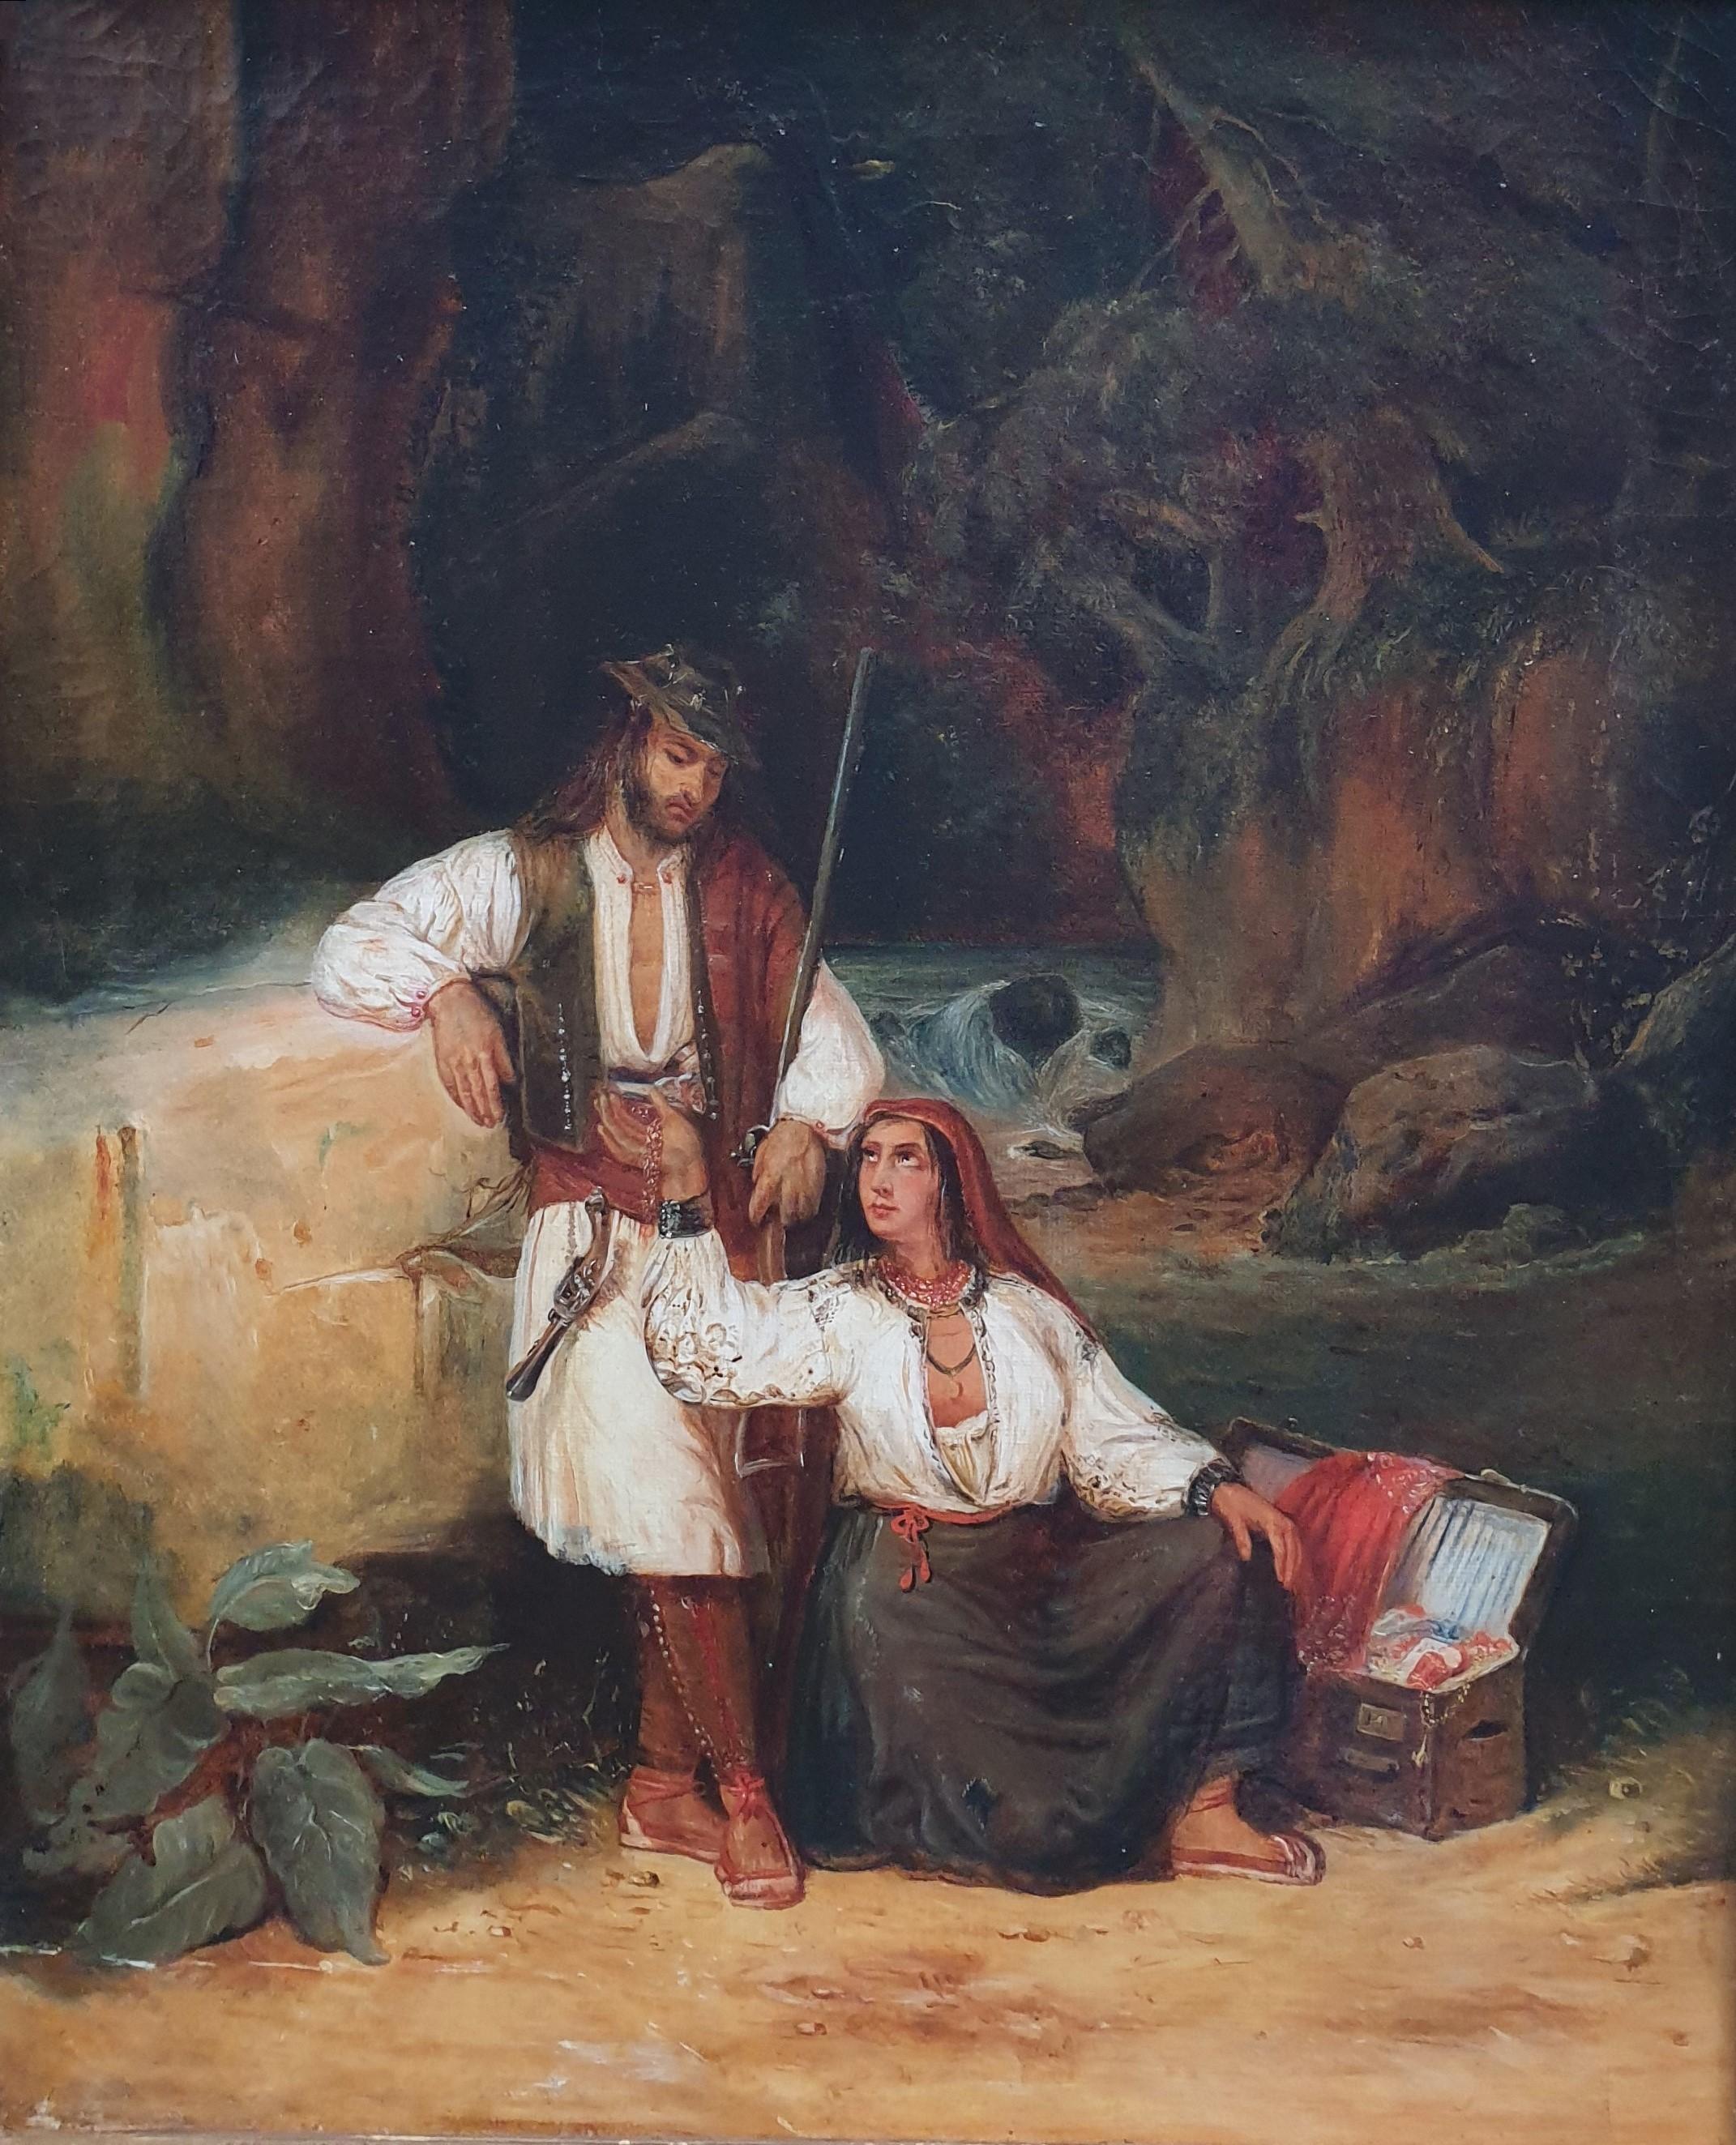 Gemälde Französische Schule Romantisches italienisches Bandit 1820 1830 JOLLIVET 19. Jahrhundert – Painting von Unknown